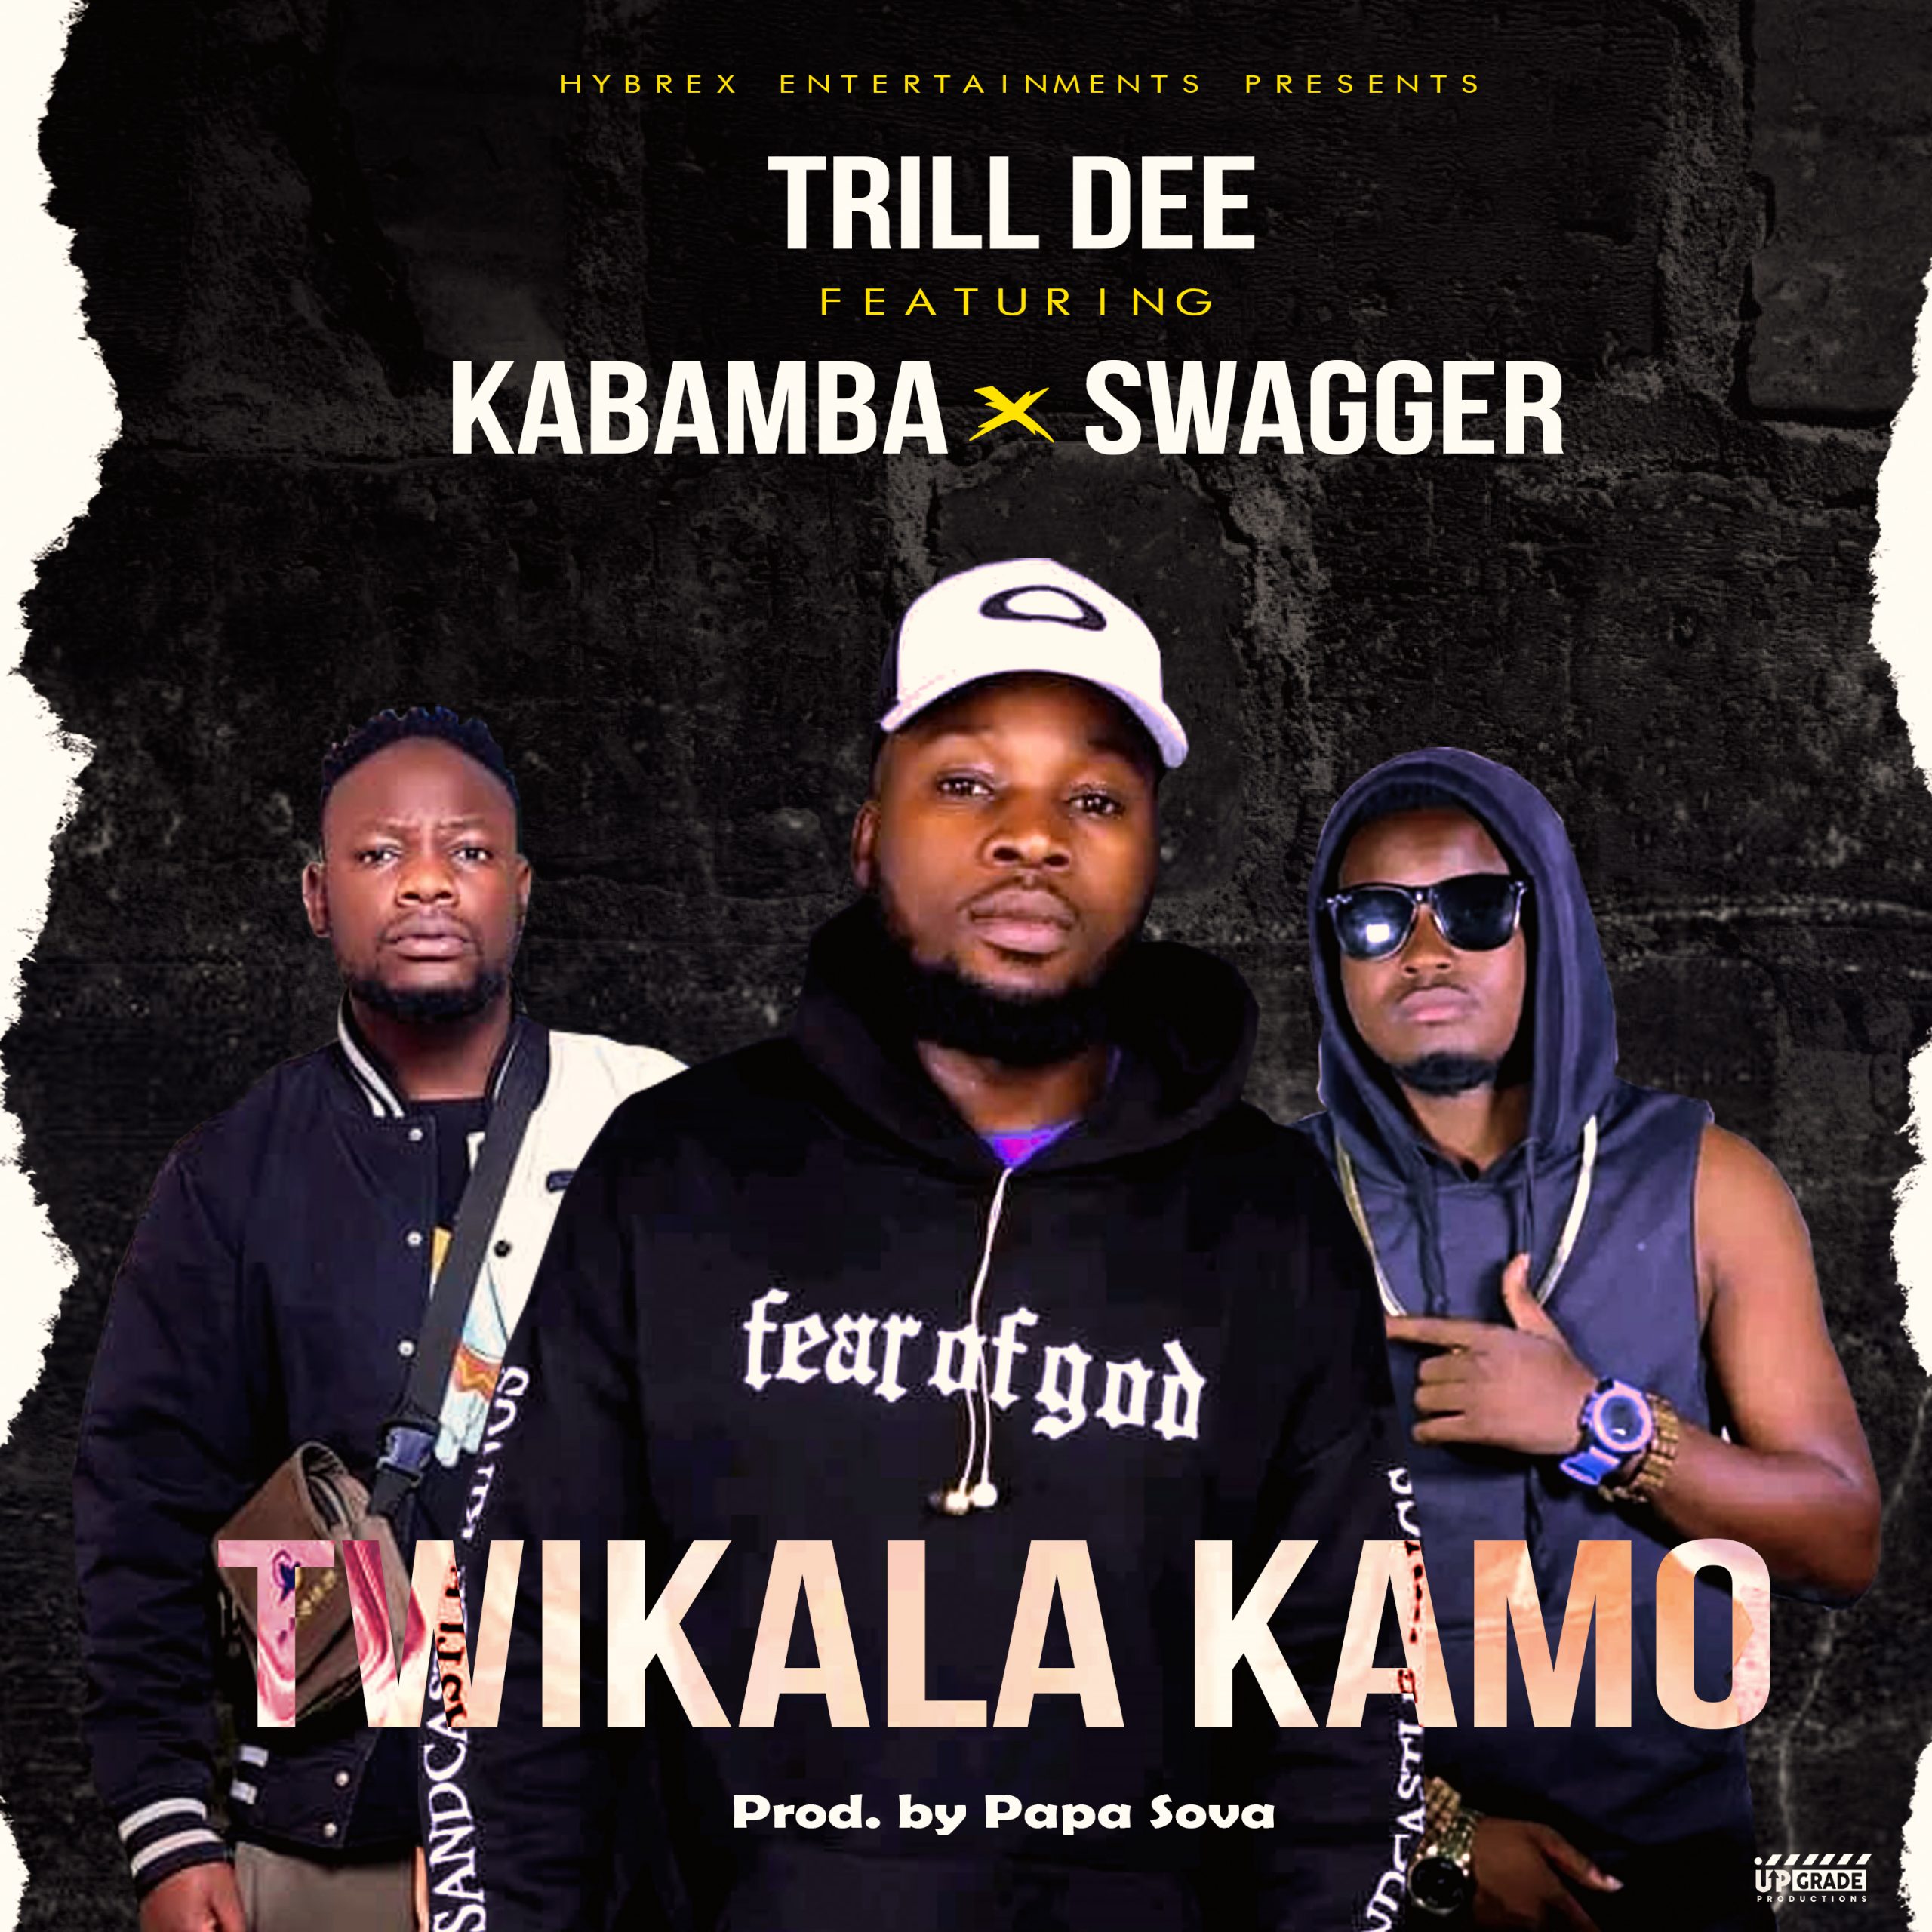 Trill Dee Ft Swagger & Kabamba -Twikalafye Kamo (Prod By Papa Sova)